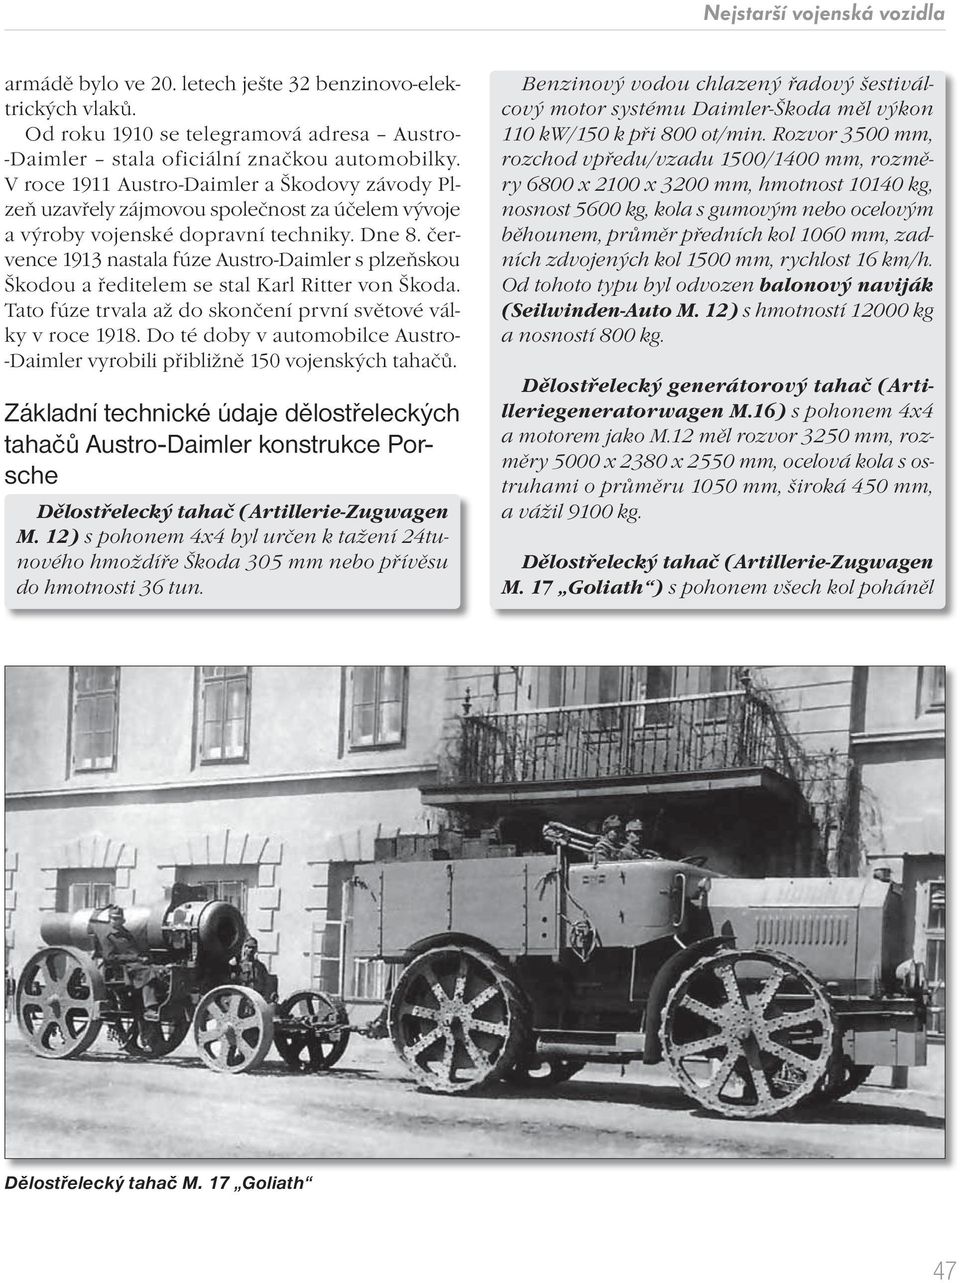 července 1913 nastala fúze Austro-Daimler s plzeňskou Škodou a ředitelem se stal Karl Ritter von Škoda. Tato fúze trvala až do skončení první světové války v roce 1918.